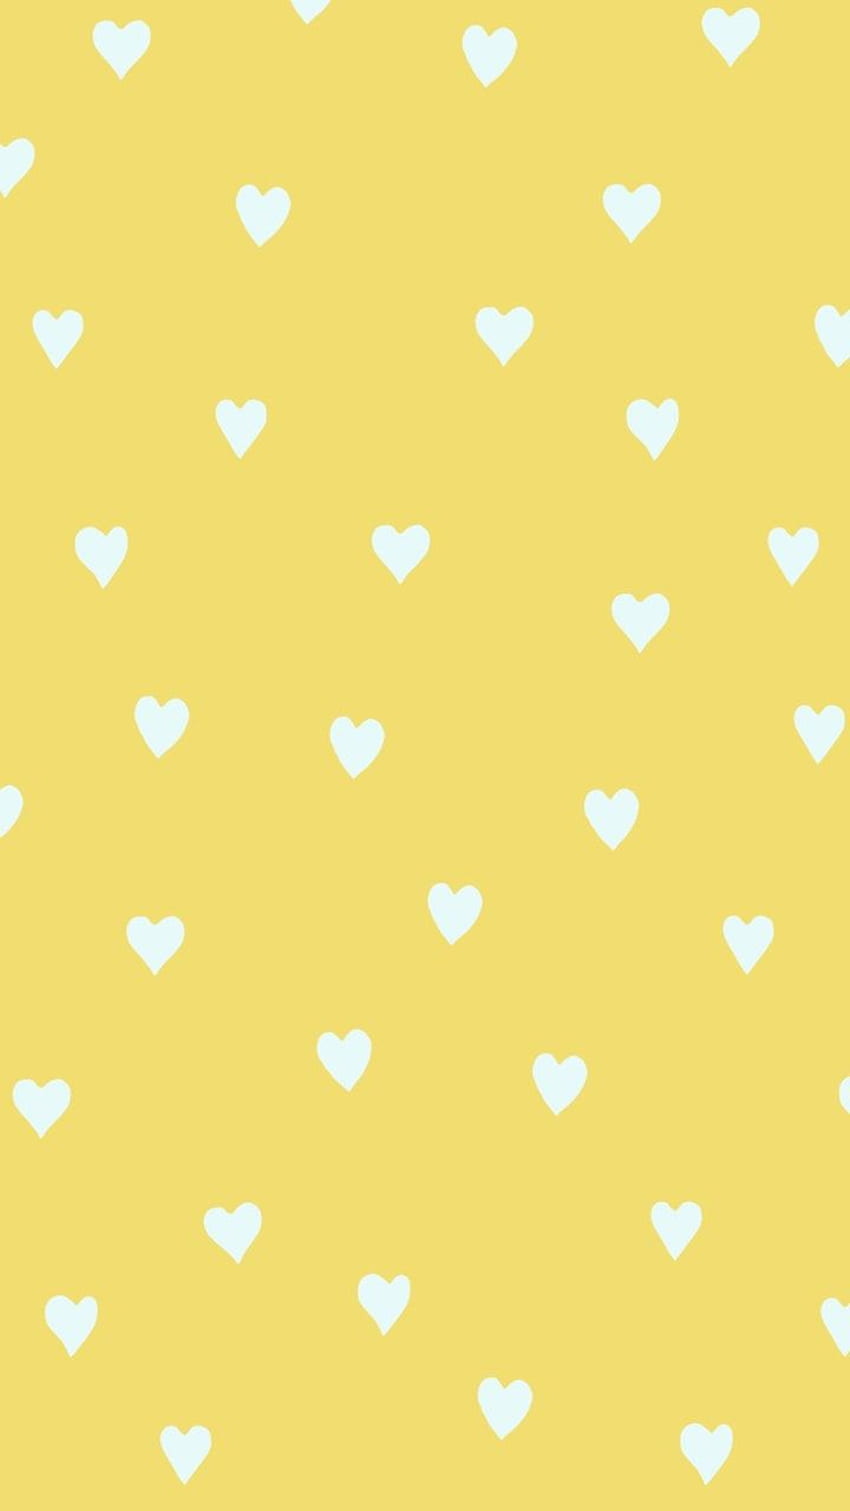 Màu sắc vàng nghệ khiến bất cứ thứ gì trông đẹp hơn và sáng hơn. Hãy xem những hình ảnh về màu sắc vàng trong nghệ thuật để khám phá thêm nhiều điều thú vị. (Translation: The yellow aesthetic makes everything look more beautiful and brighter. Let\'s watch images about the yellow aesthetic in art to discover more interesting things.)